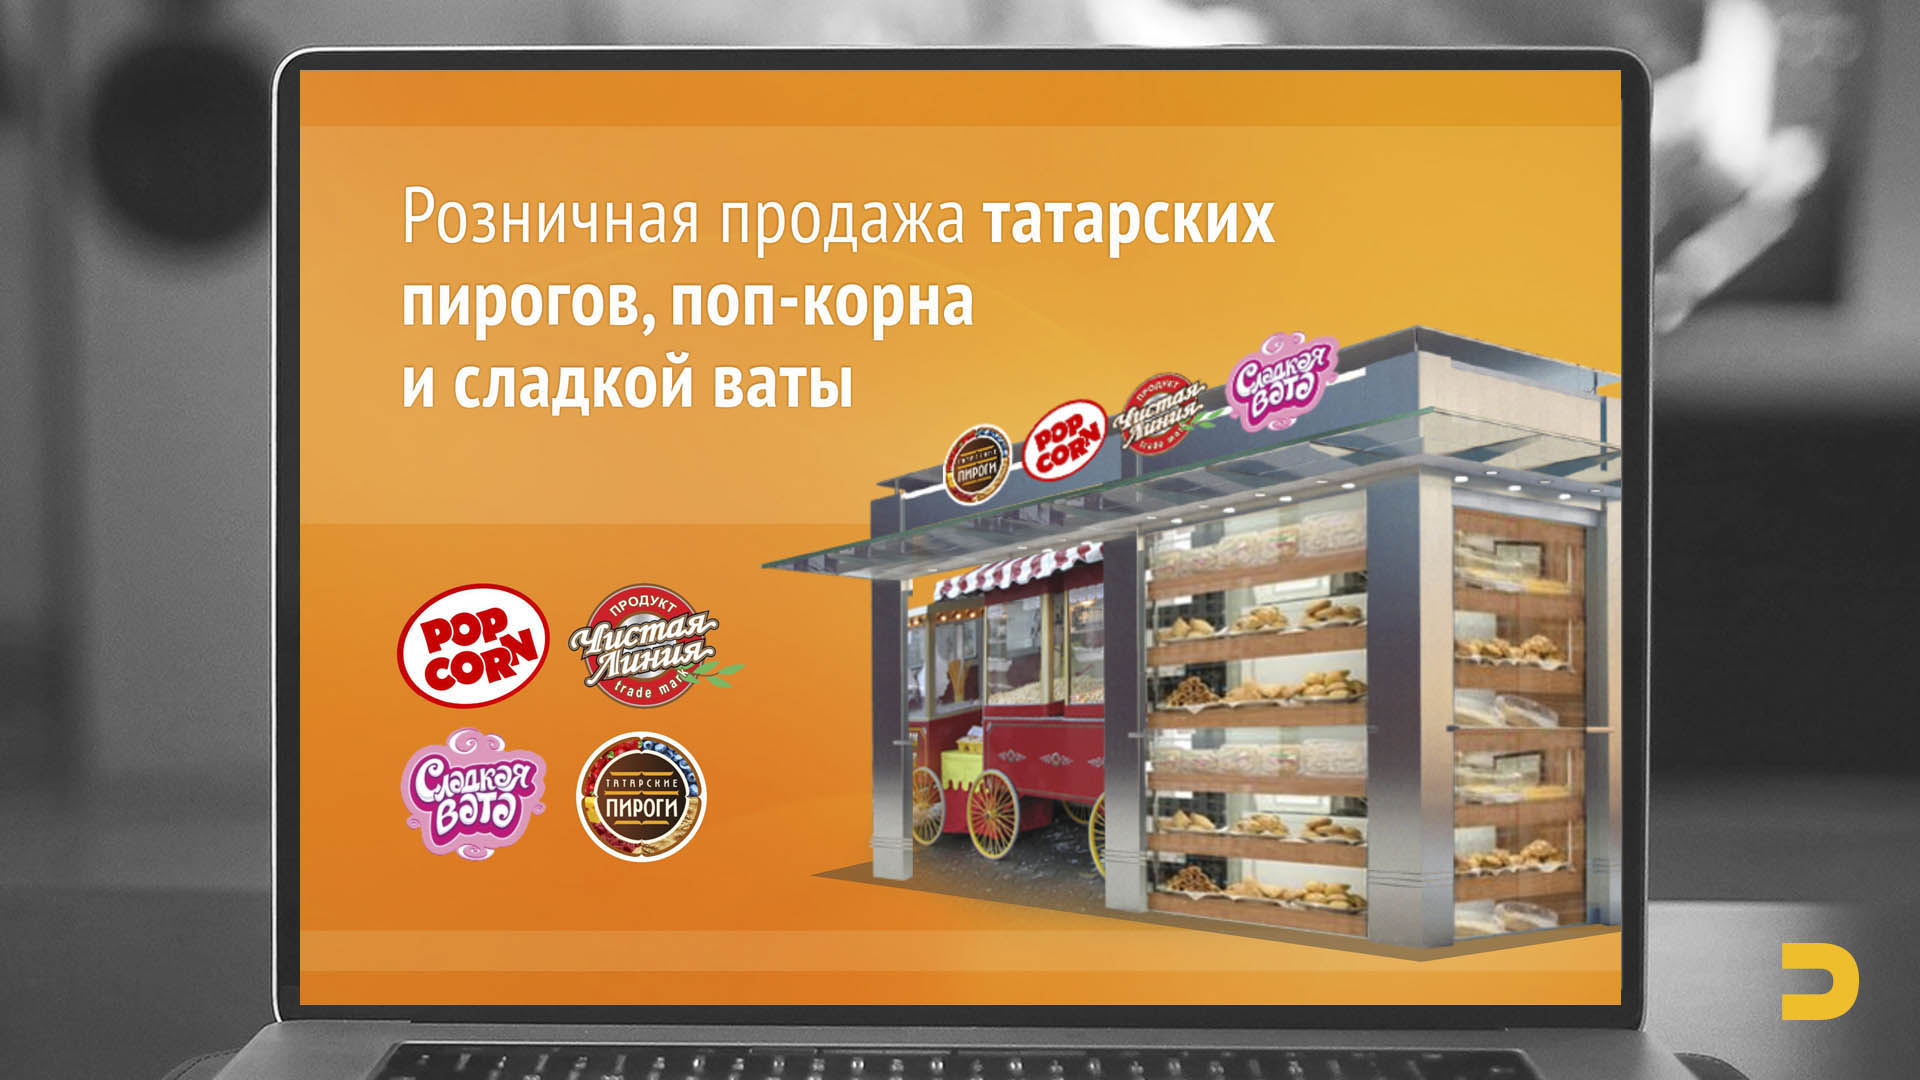 Презентация розничной продажи татарских пирогов